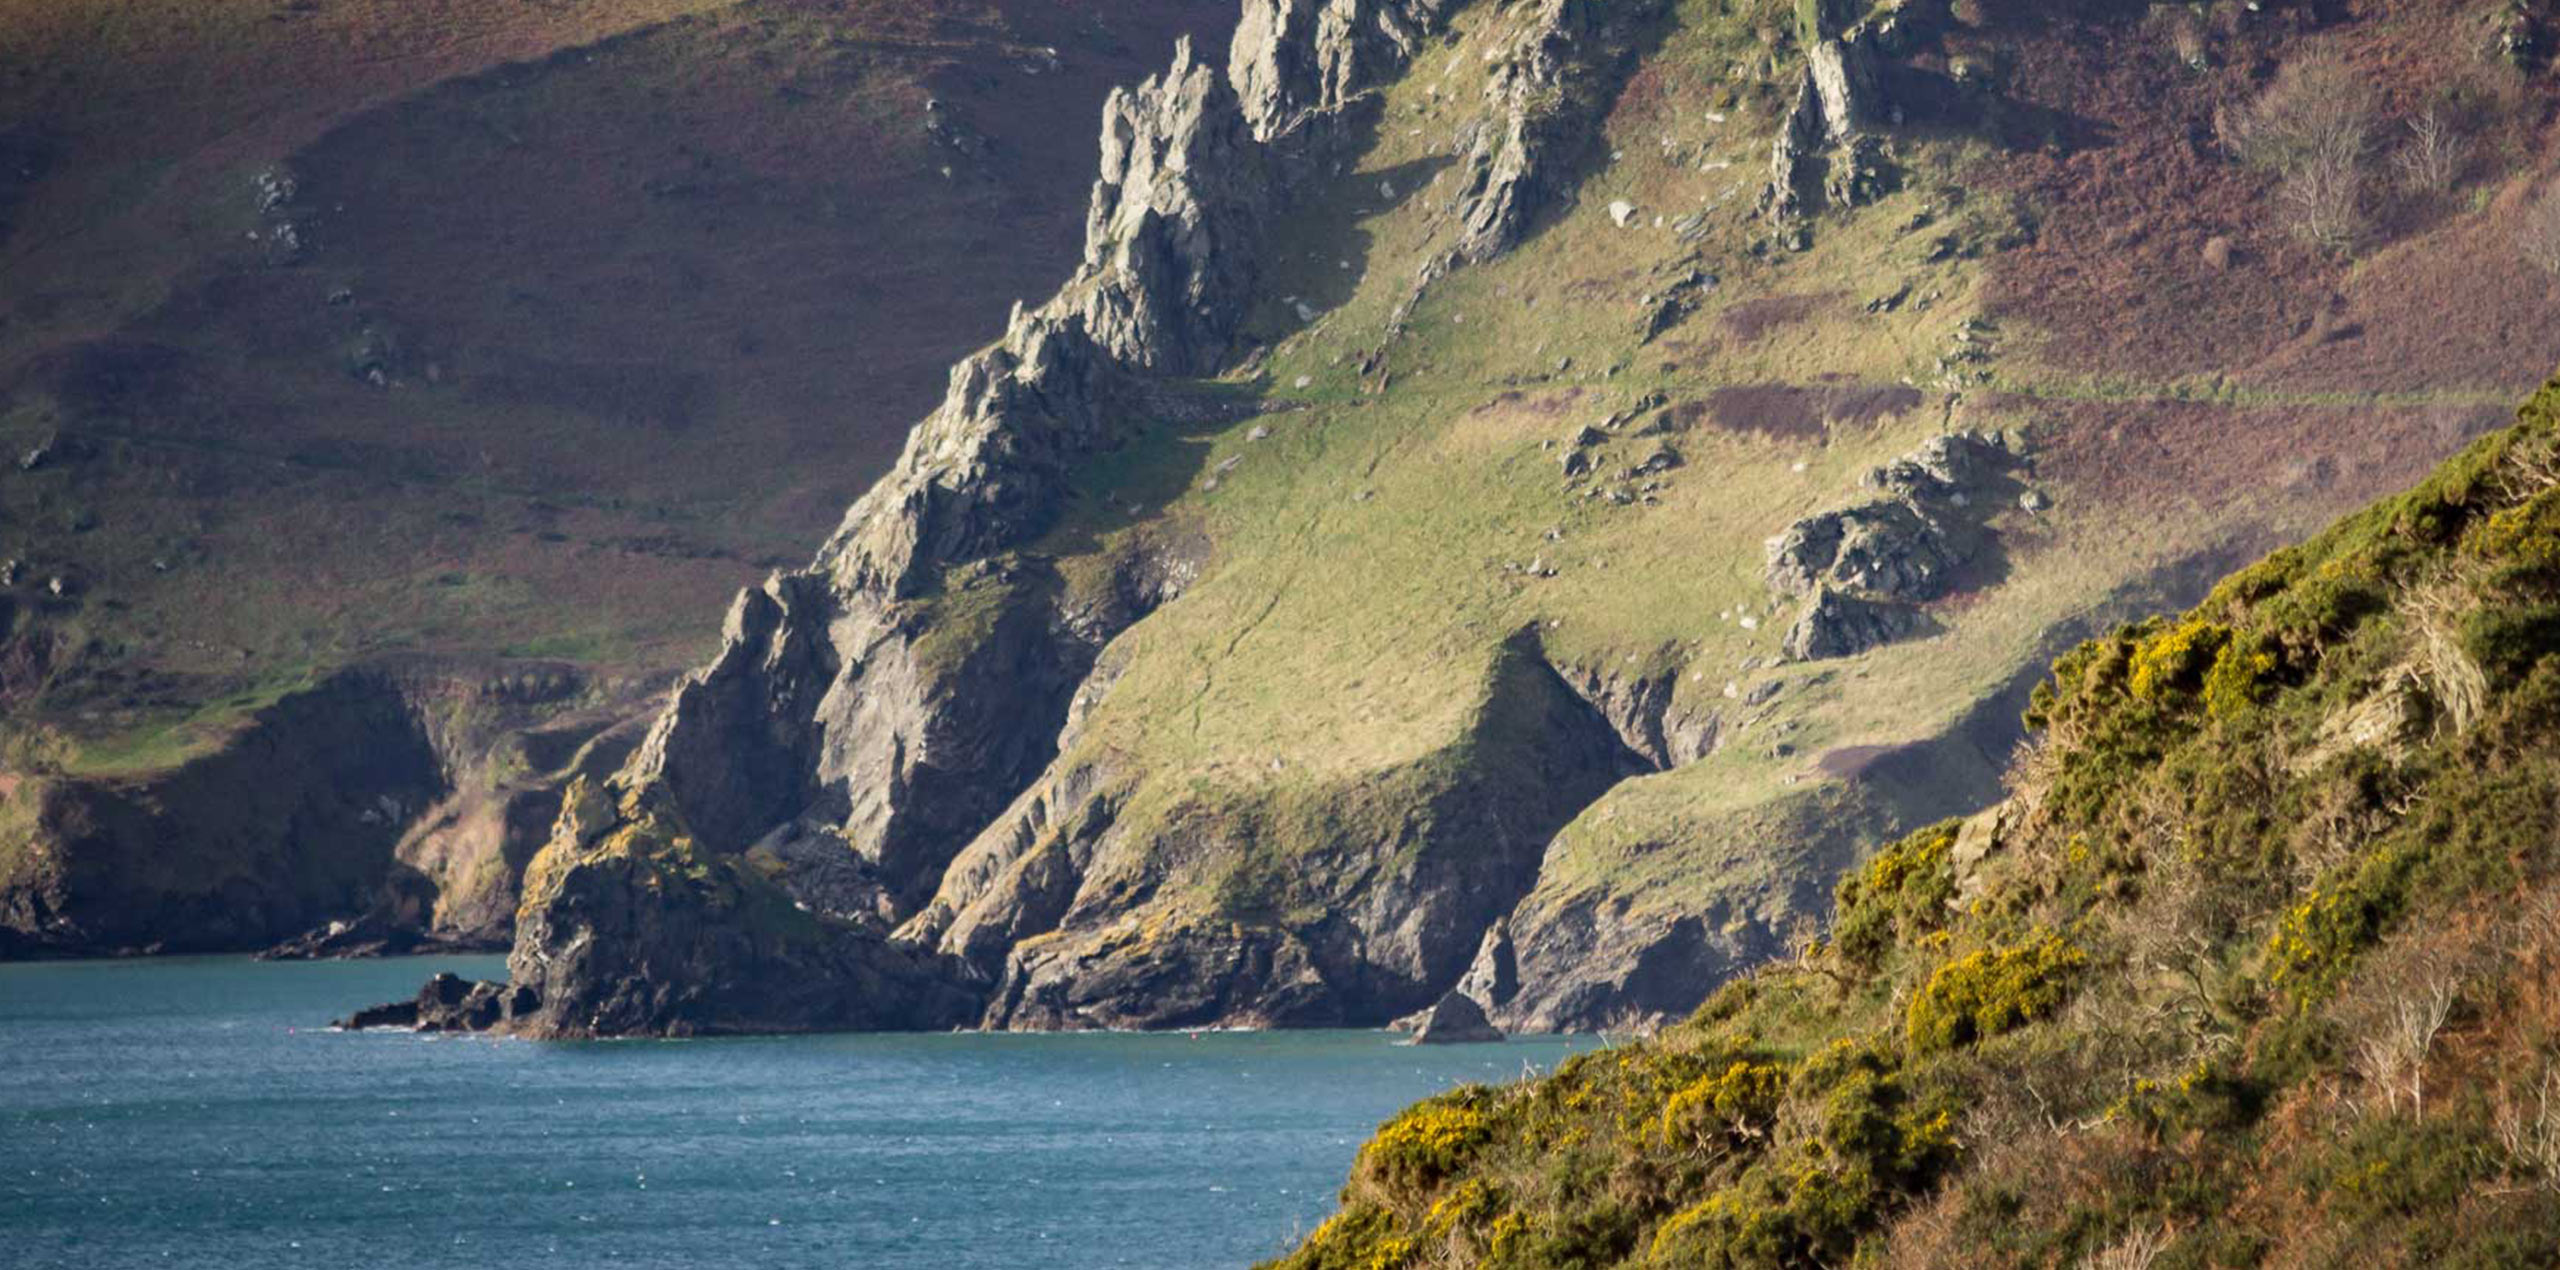 Devon cliffs and sea